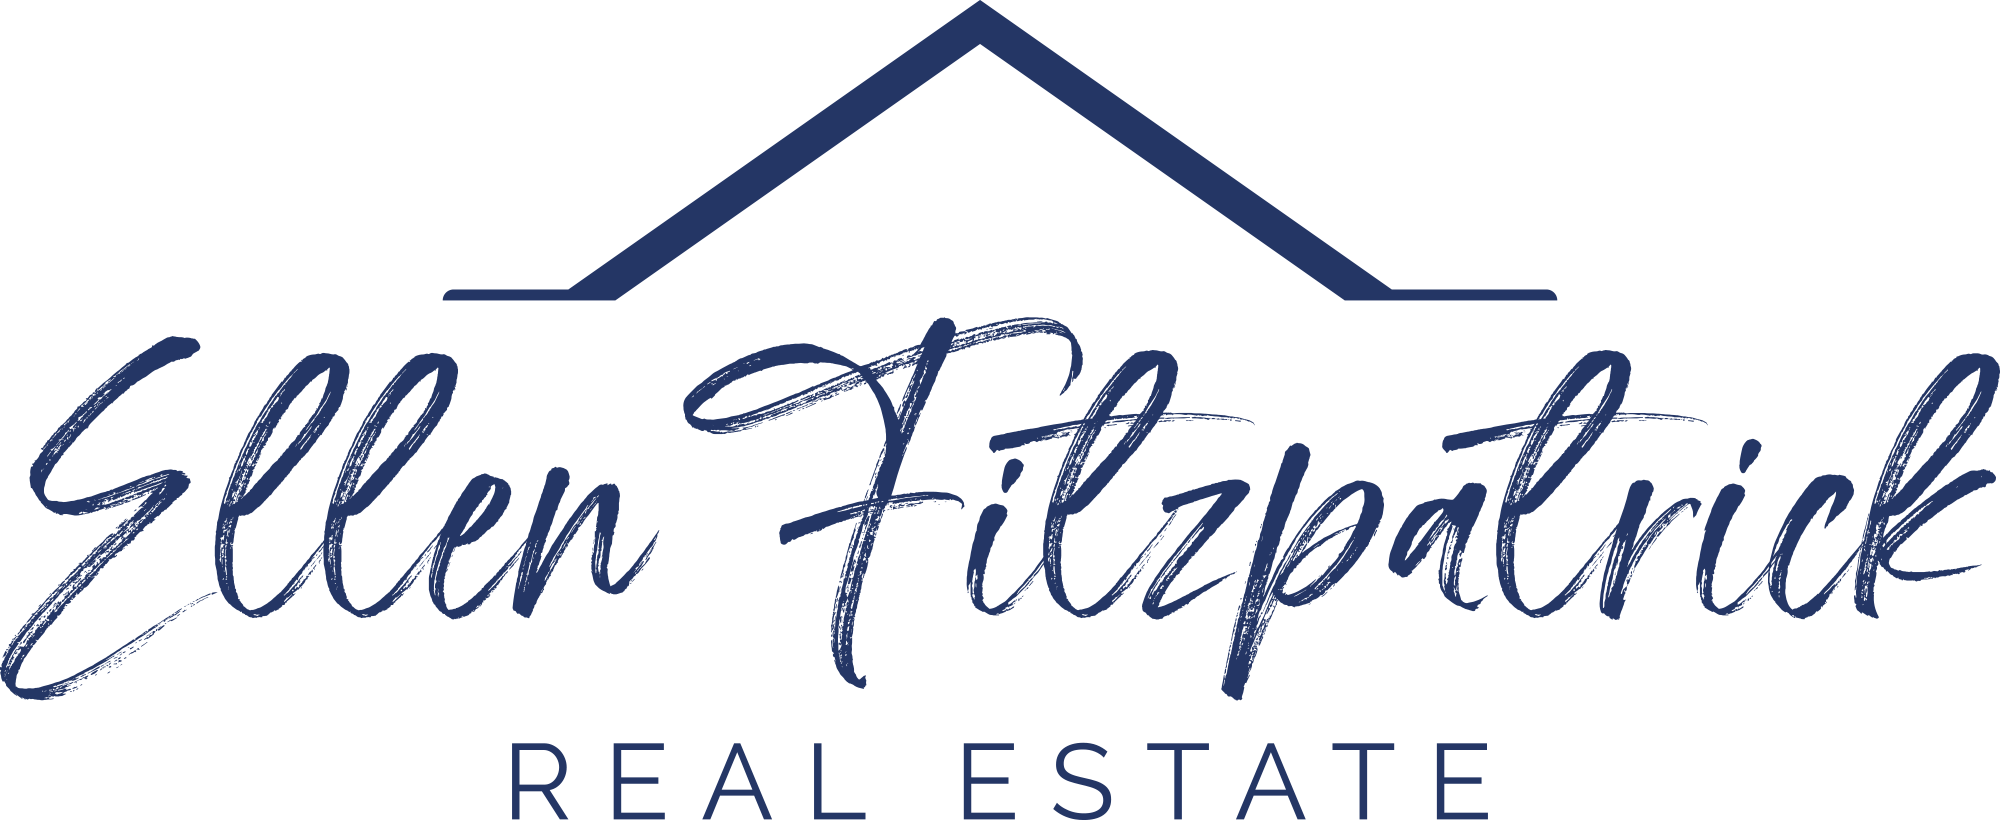 Ellen Fitzpatrick Real Estate | Des Moines, IA Homes for Sale